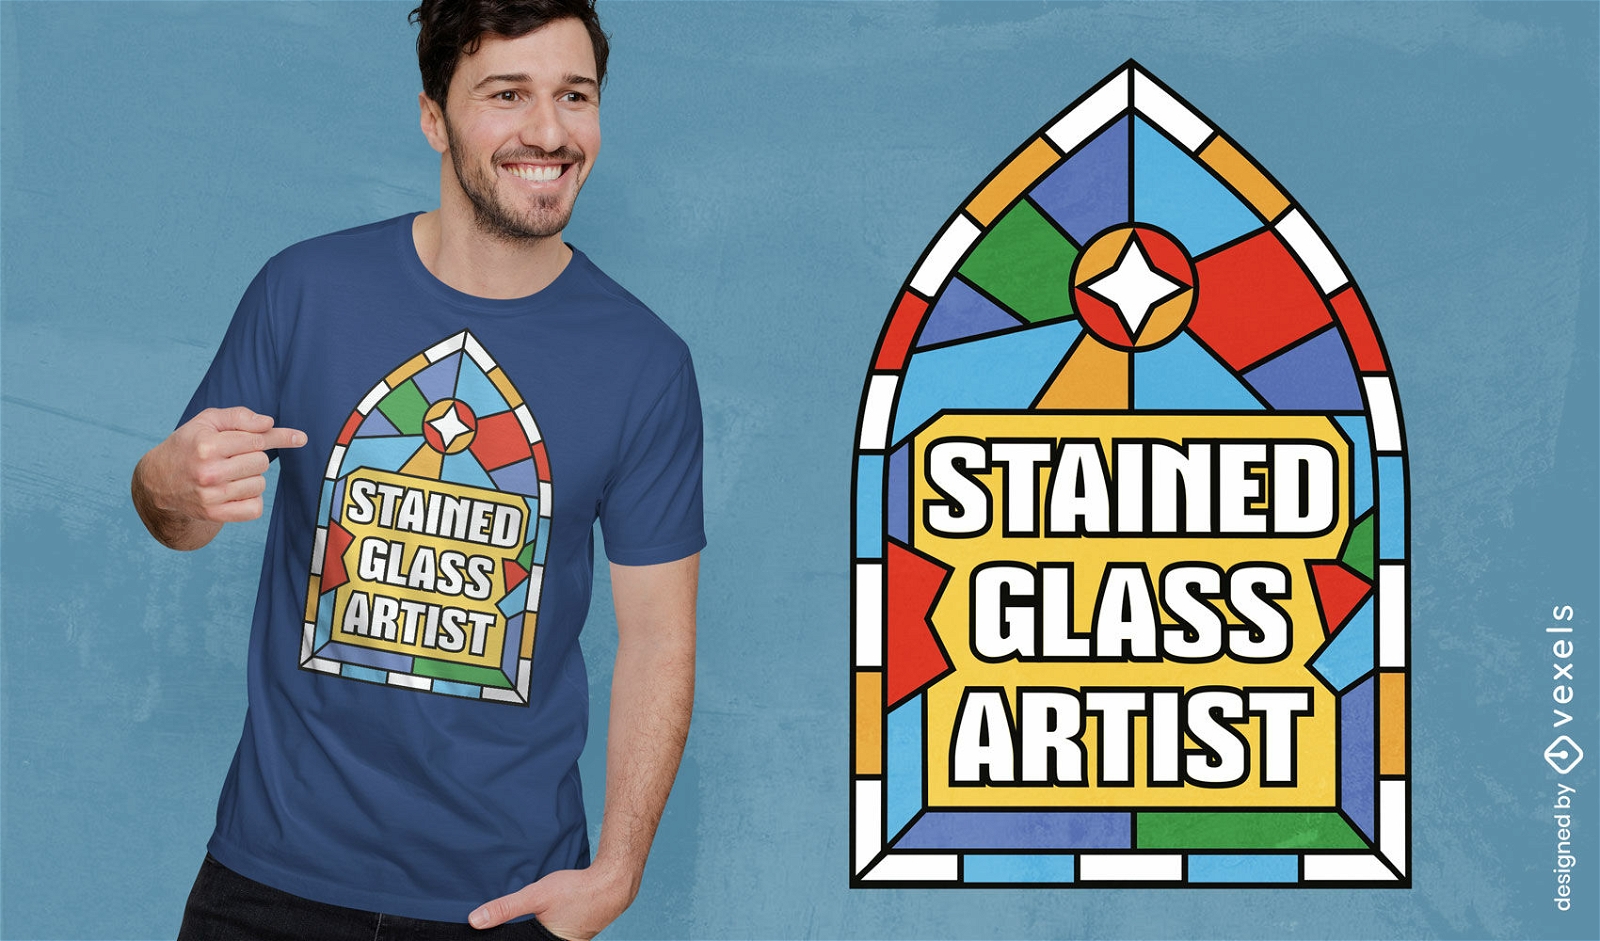 Diseño de camiseta con cita de artista de vidrieras.